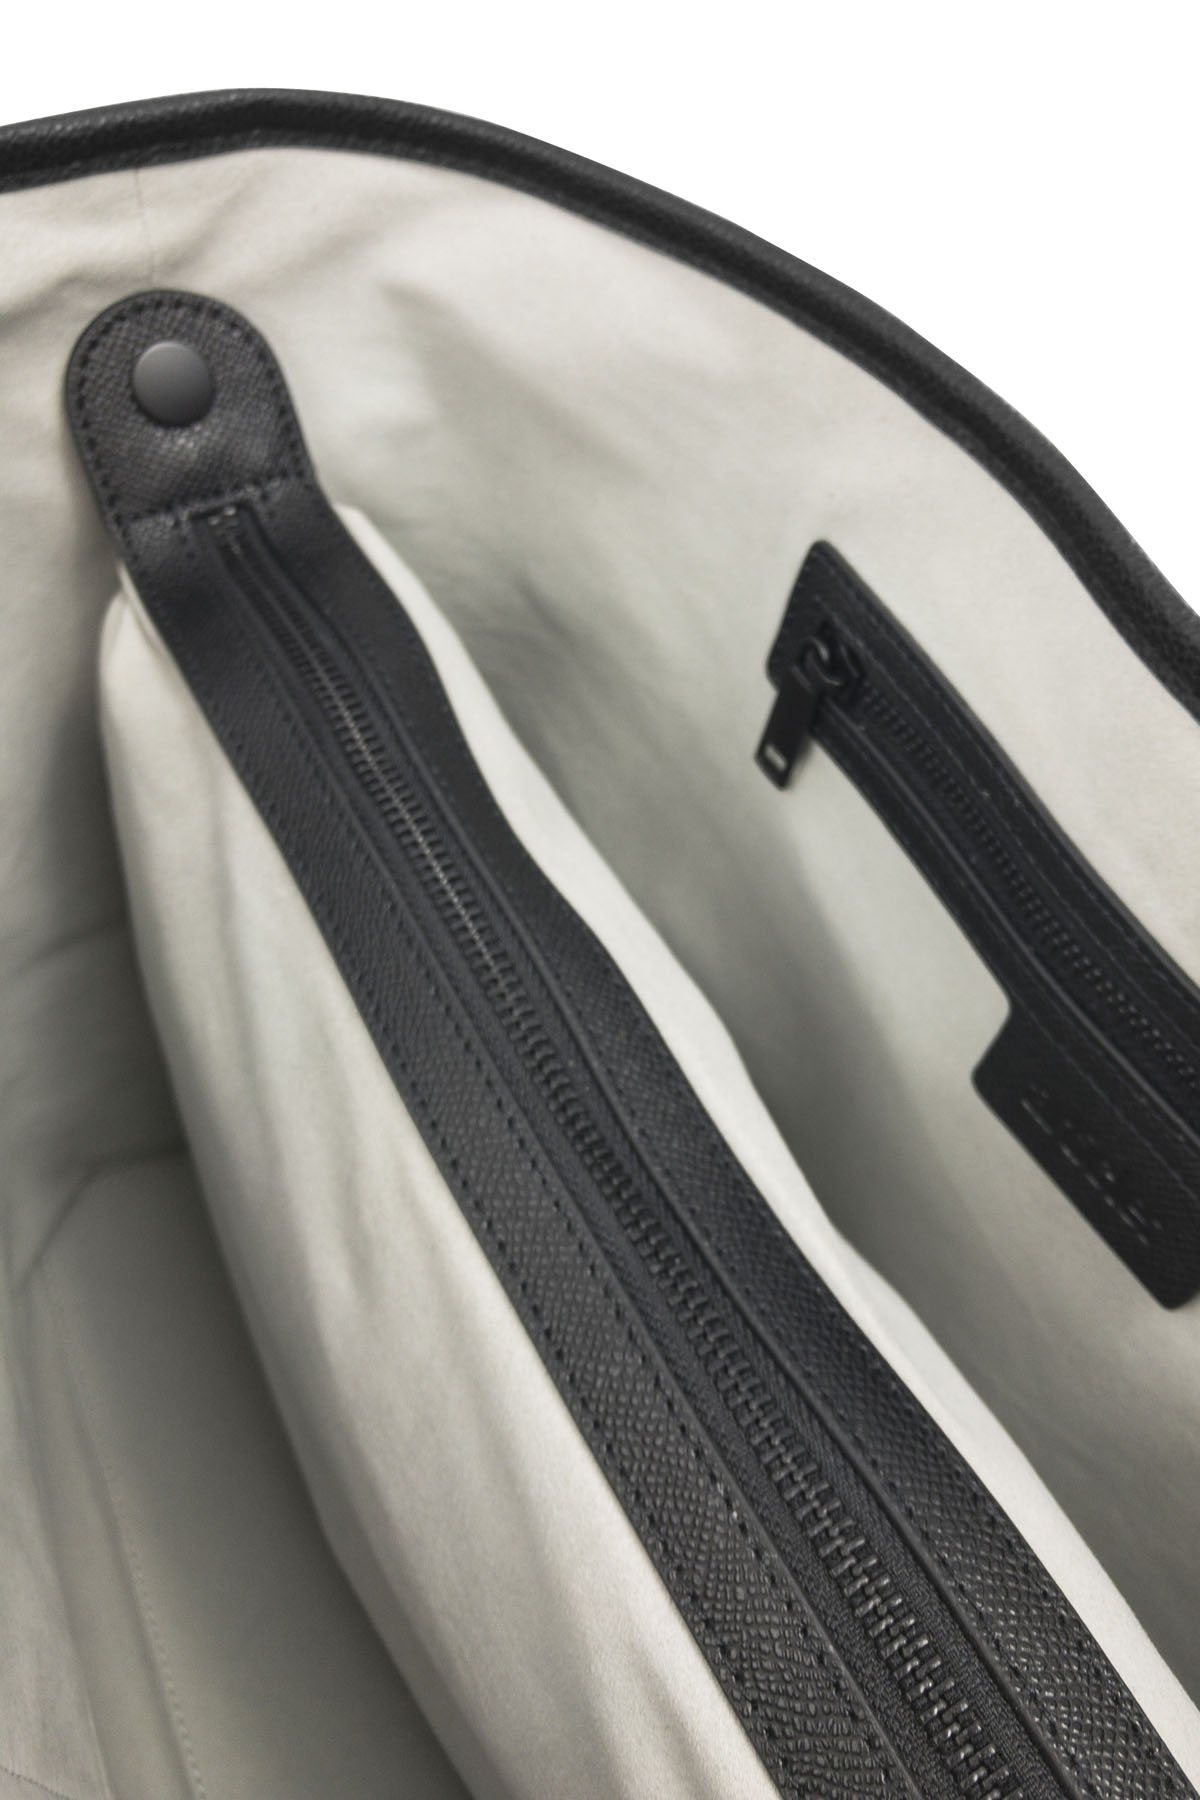 article: #150 Handbag Tote - Noir